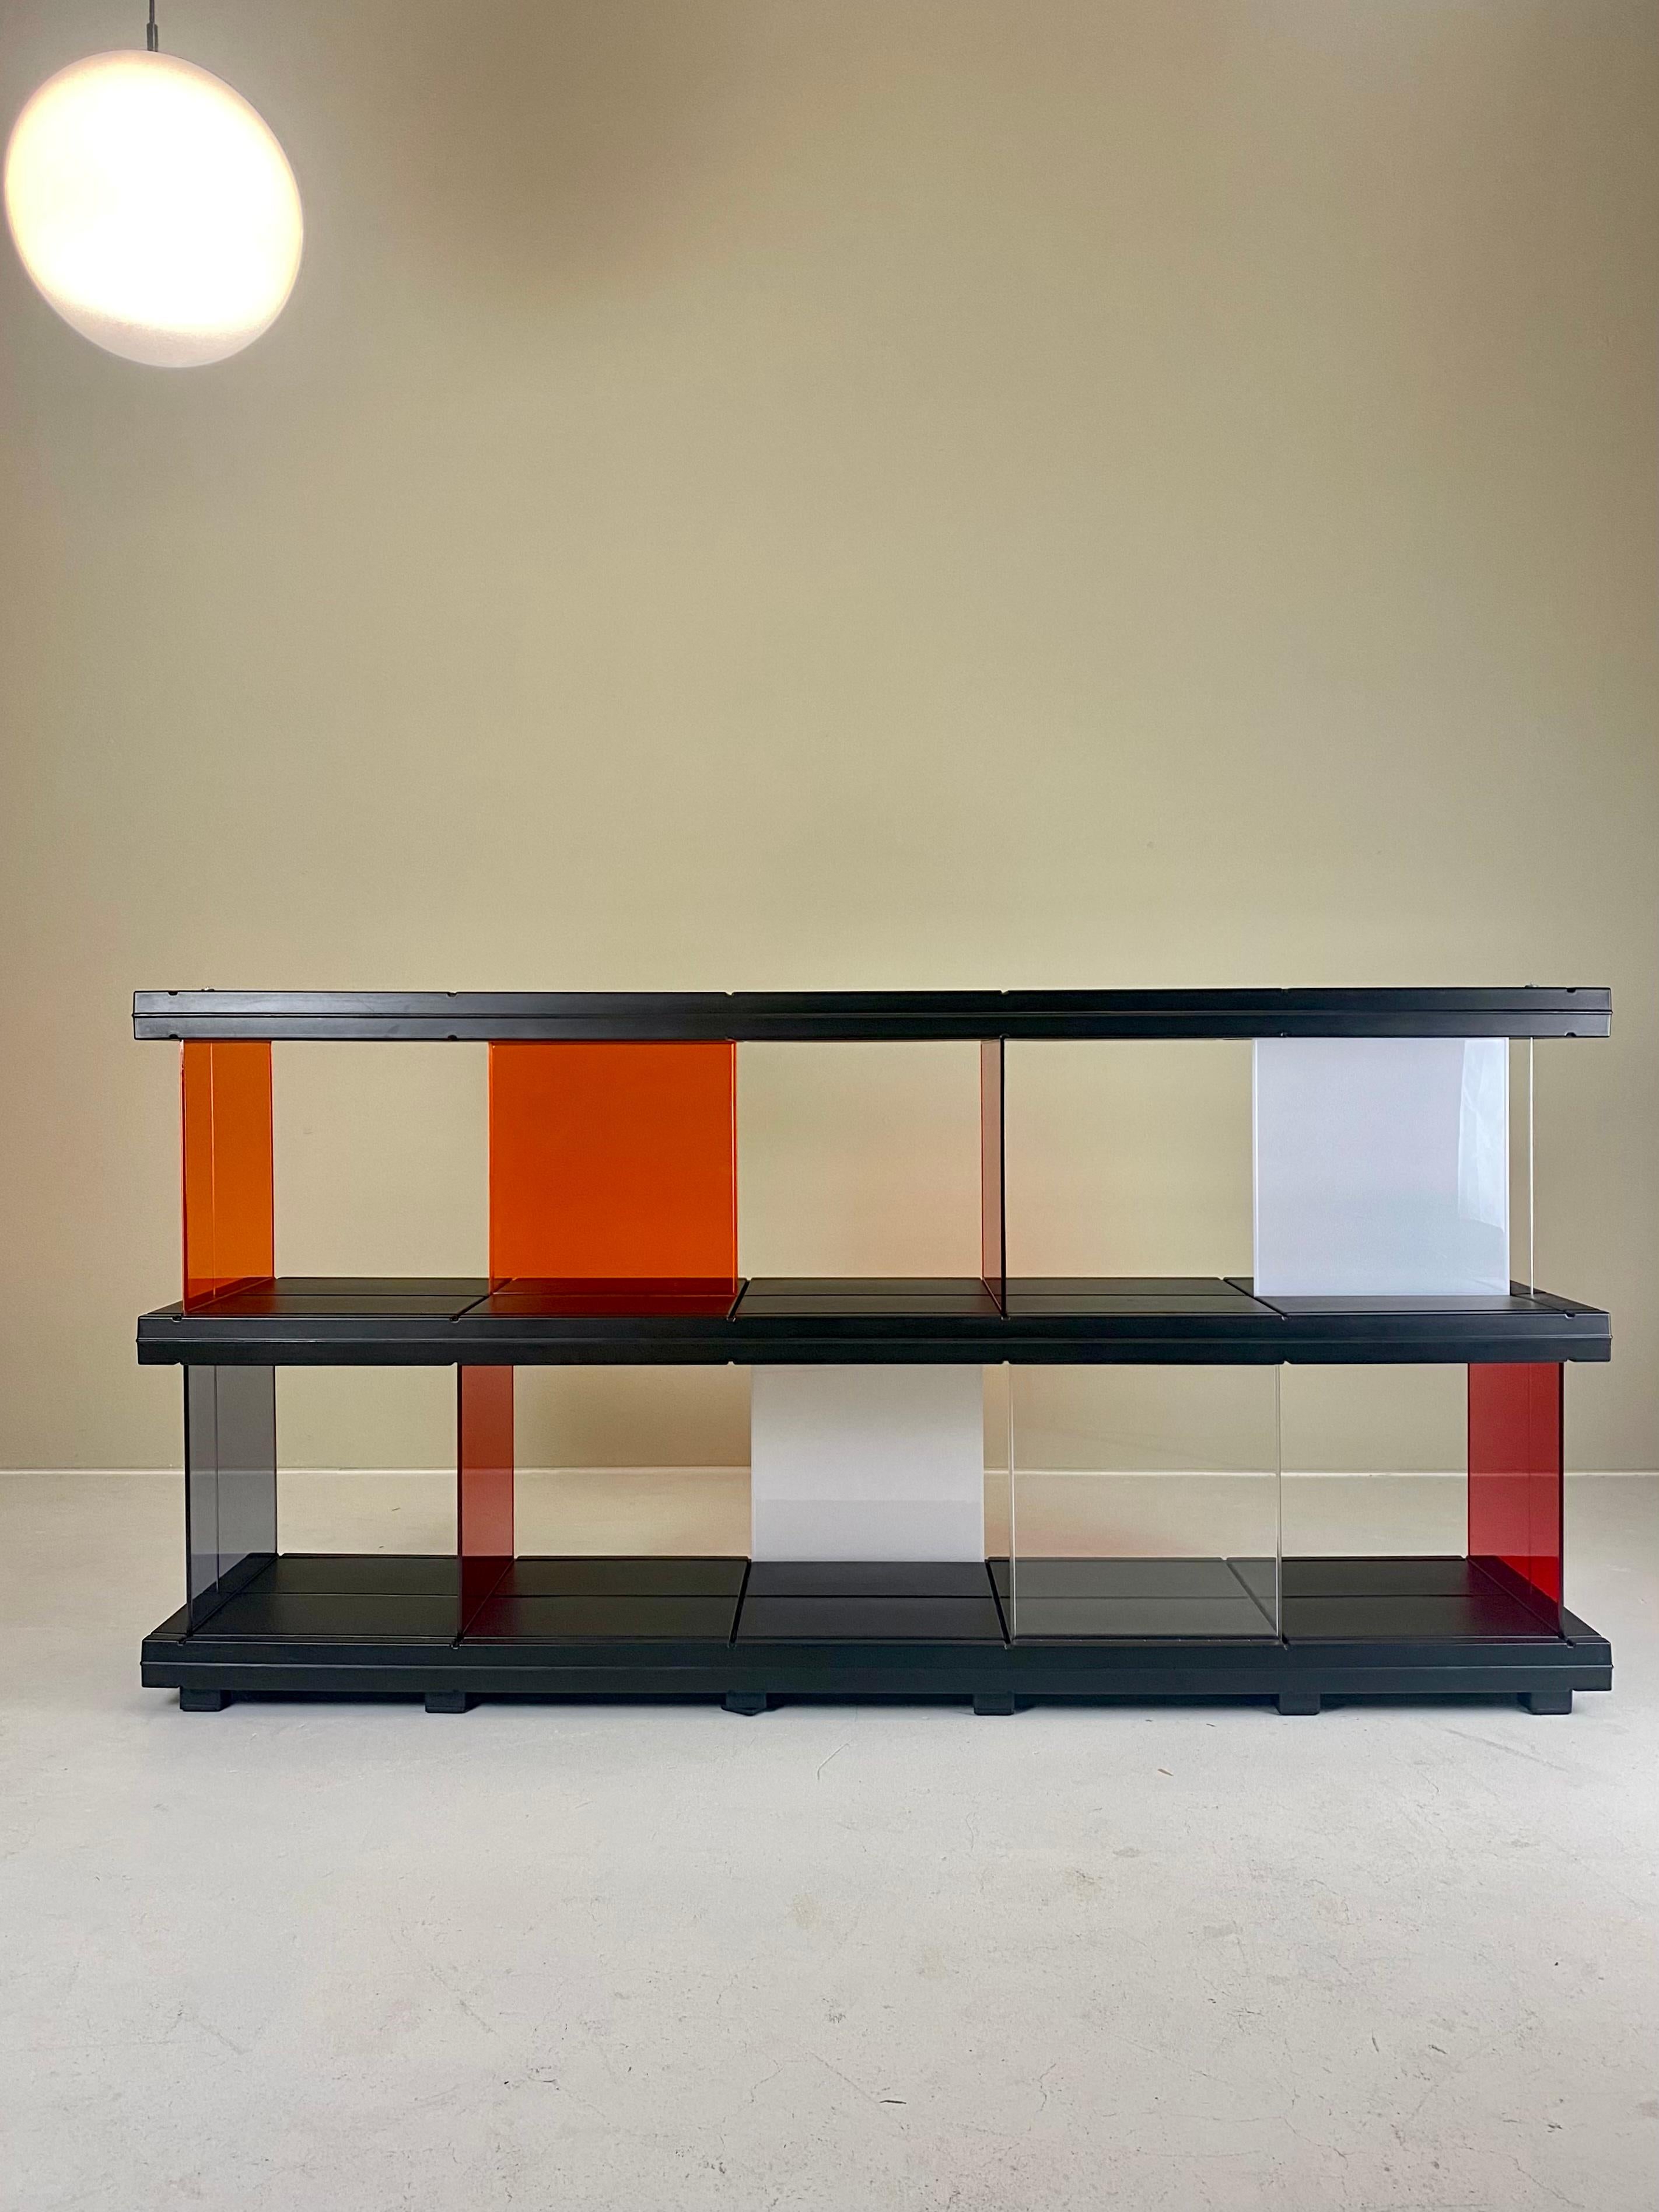 Dieses seltene Sideboard, das im Jahr 2000 entworfen wurde und heute nicht mehr produziert wird, ist Ronan & Erwan Bouroullecs moderne Interpretation der klassischen Meisterwerke von Charlotte Perriand und Jean Prouve. 

Das aus geblasenem